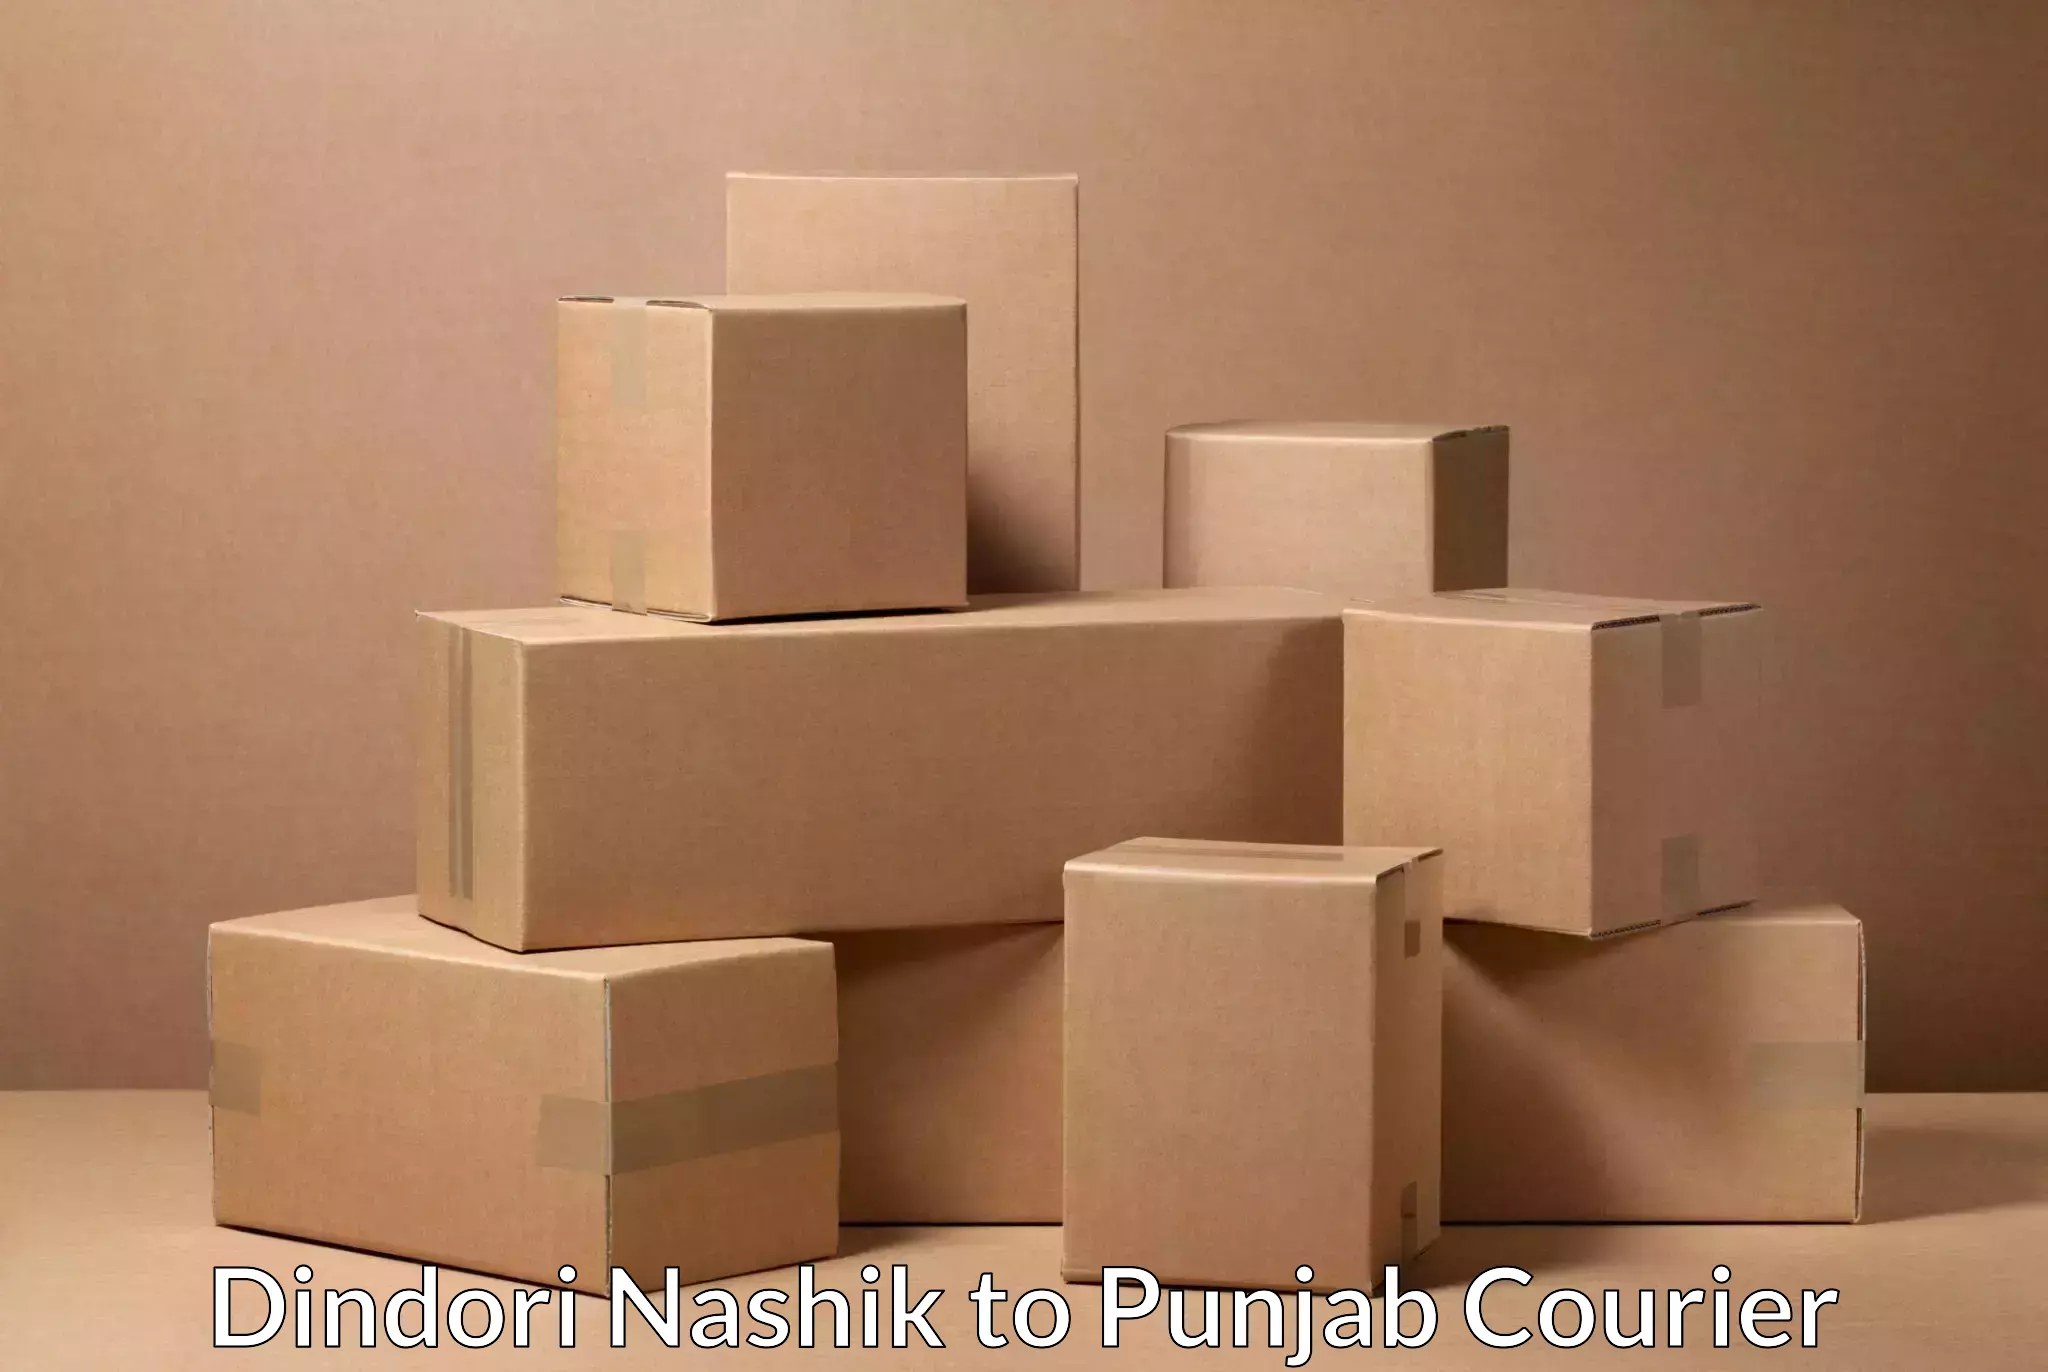 Customized delivery solutions Dindori Nashik to Central University of Punjab Bathinda